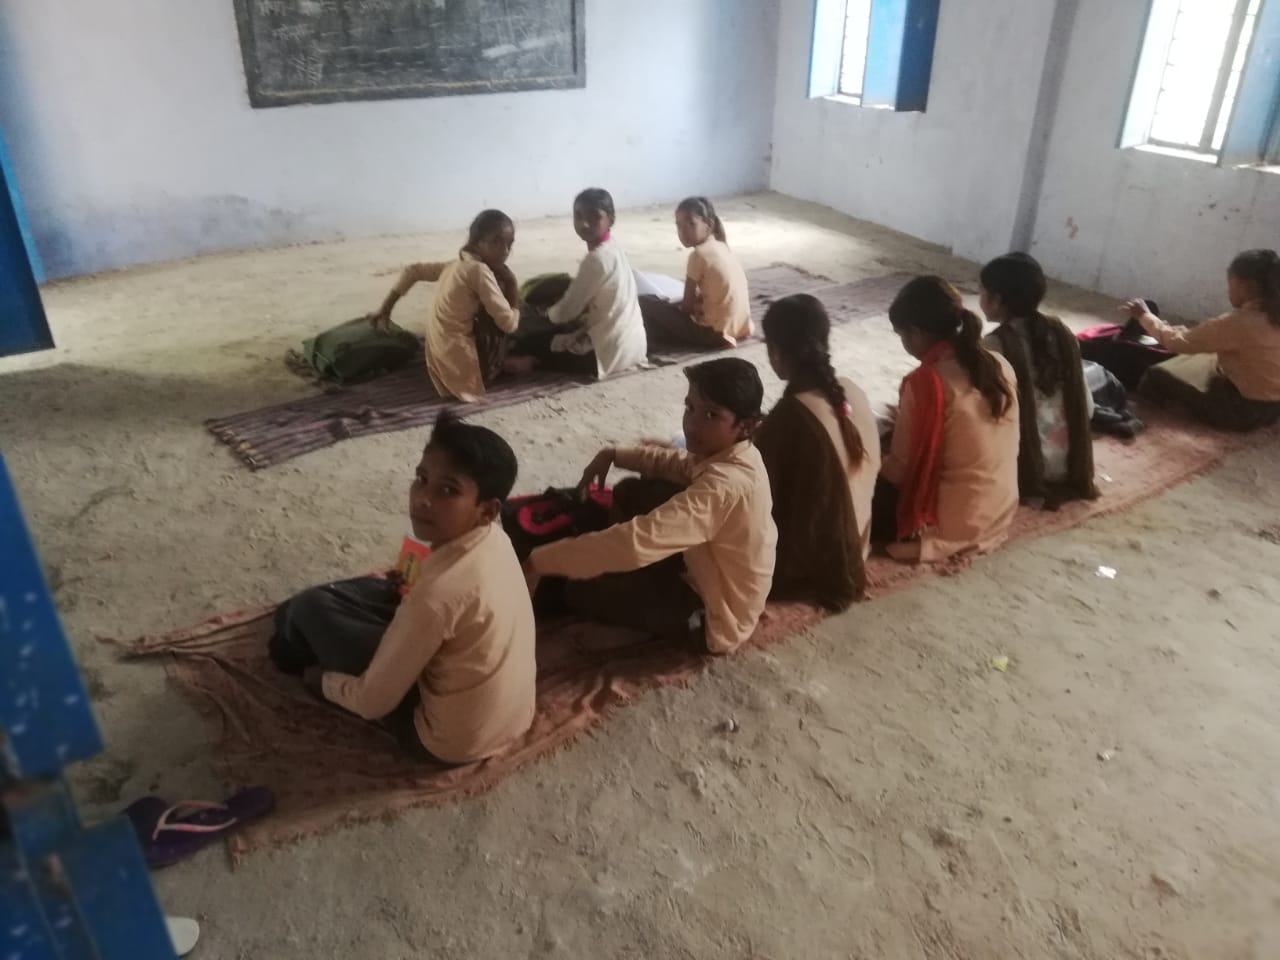 राजस्थान के भरतपुर ज़िले के नंगला धरसोनी गांव में स्थित स्कूल में बच्चों के बैठने के लिए फर्नीचर नहीं है. (फोटो: अवधेश आकोदिया/द वायर)